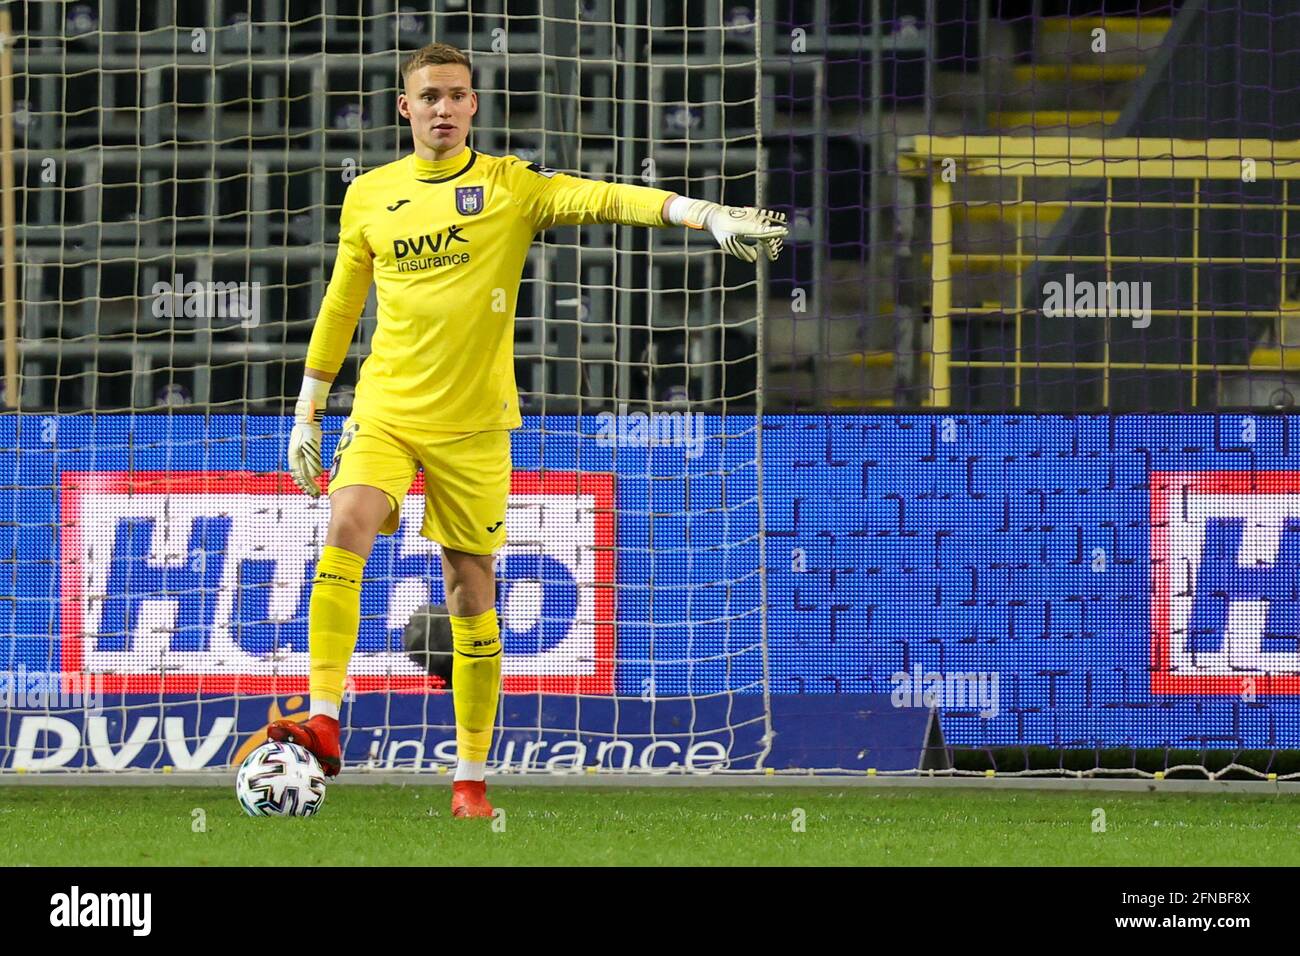 Allianz enters Belgian soccer with RSC Anderlecht - SportsPro